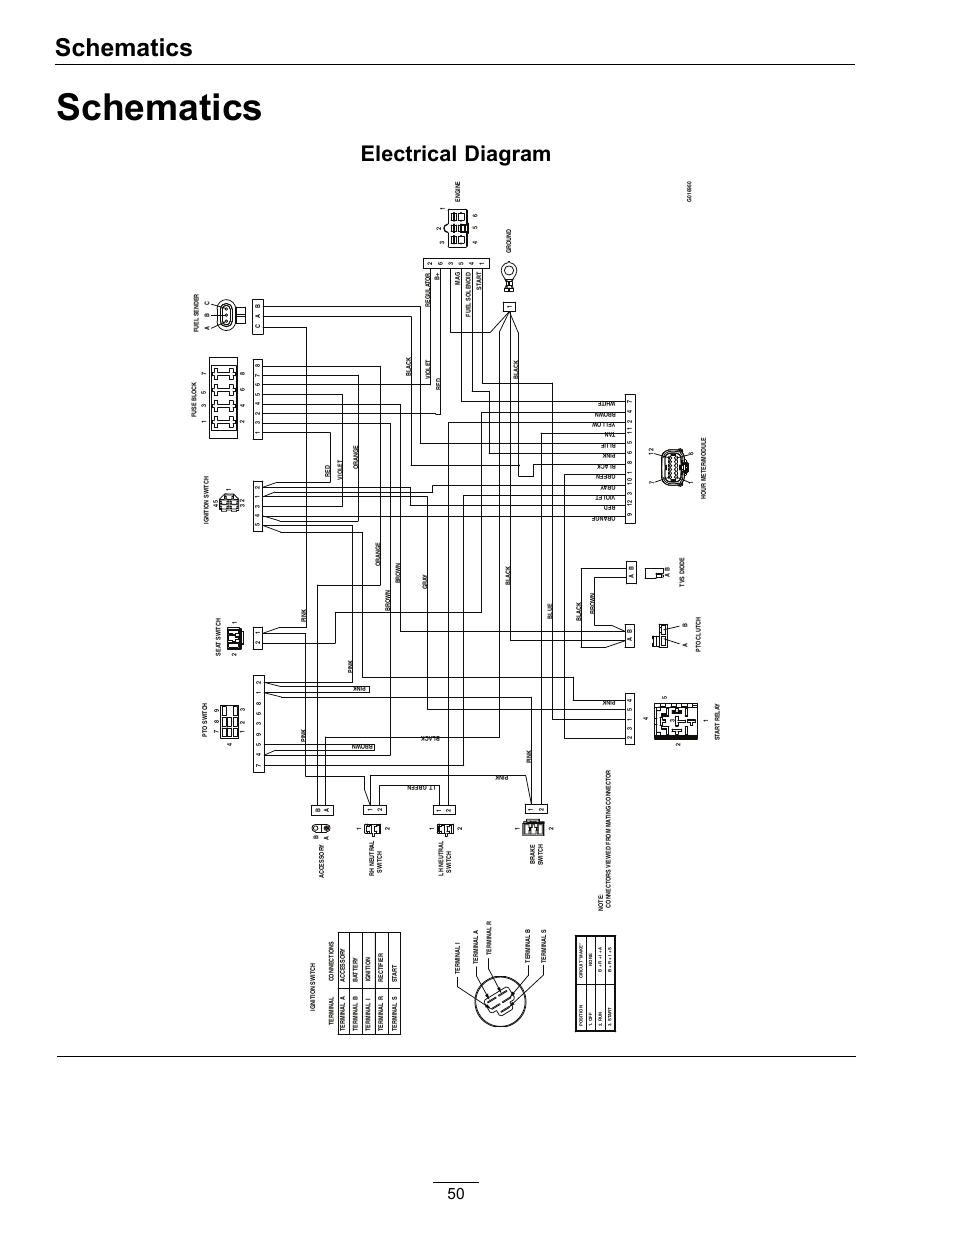 hid eh400k wiring diagram